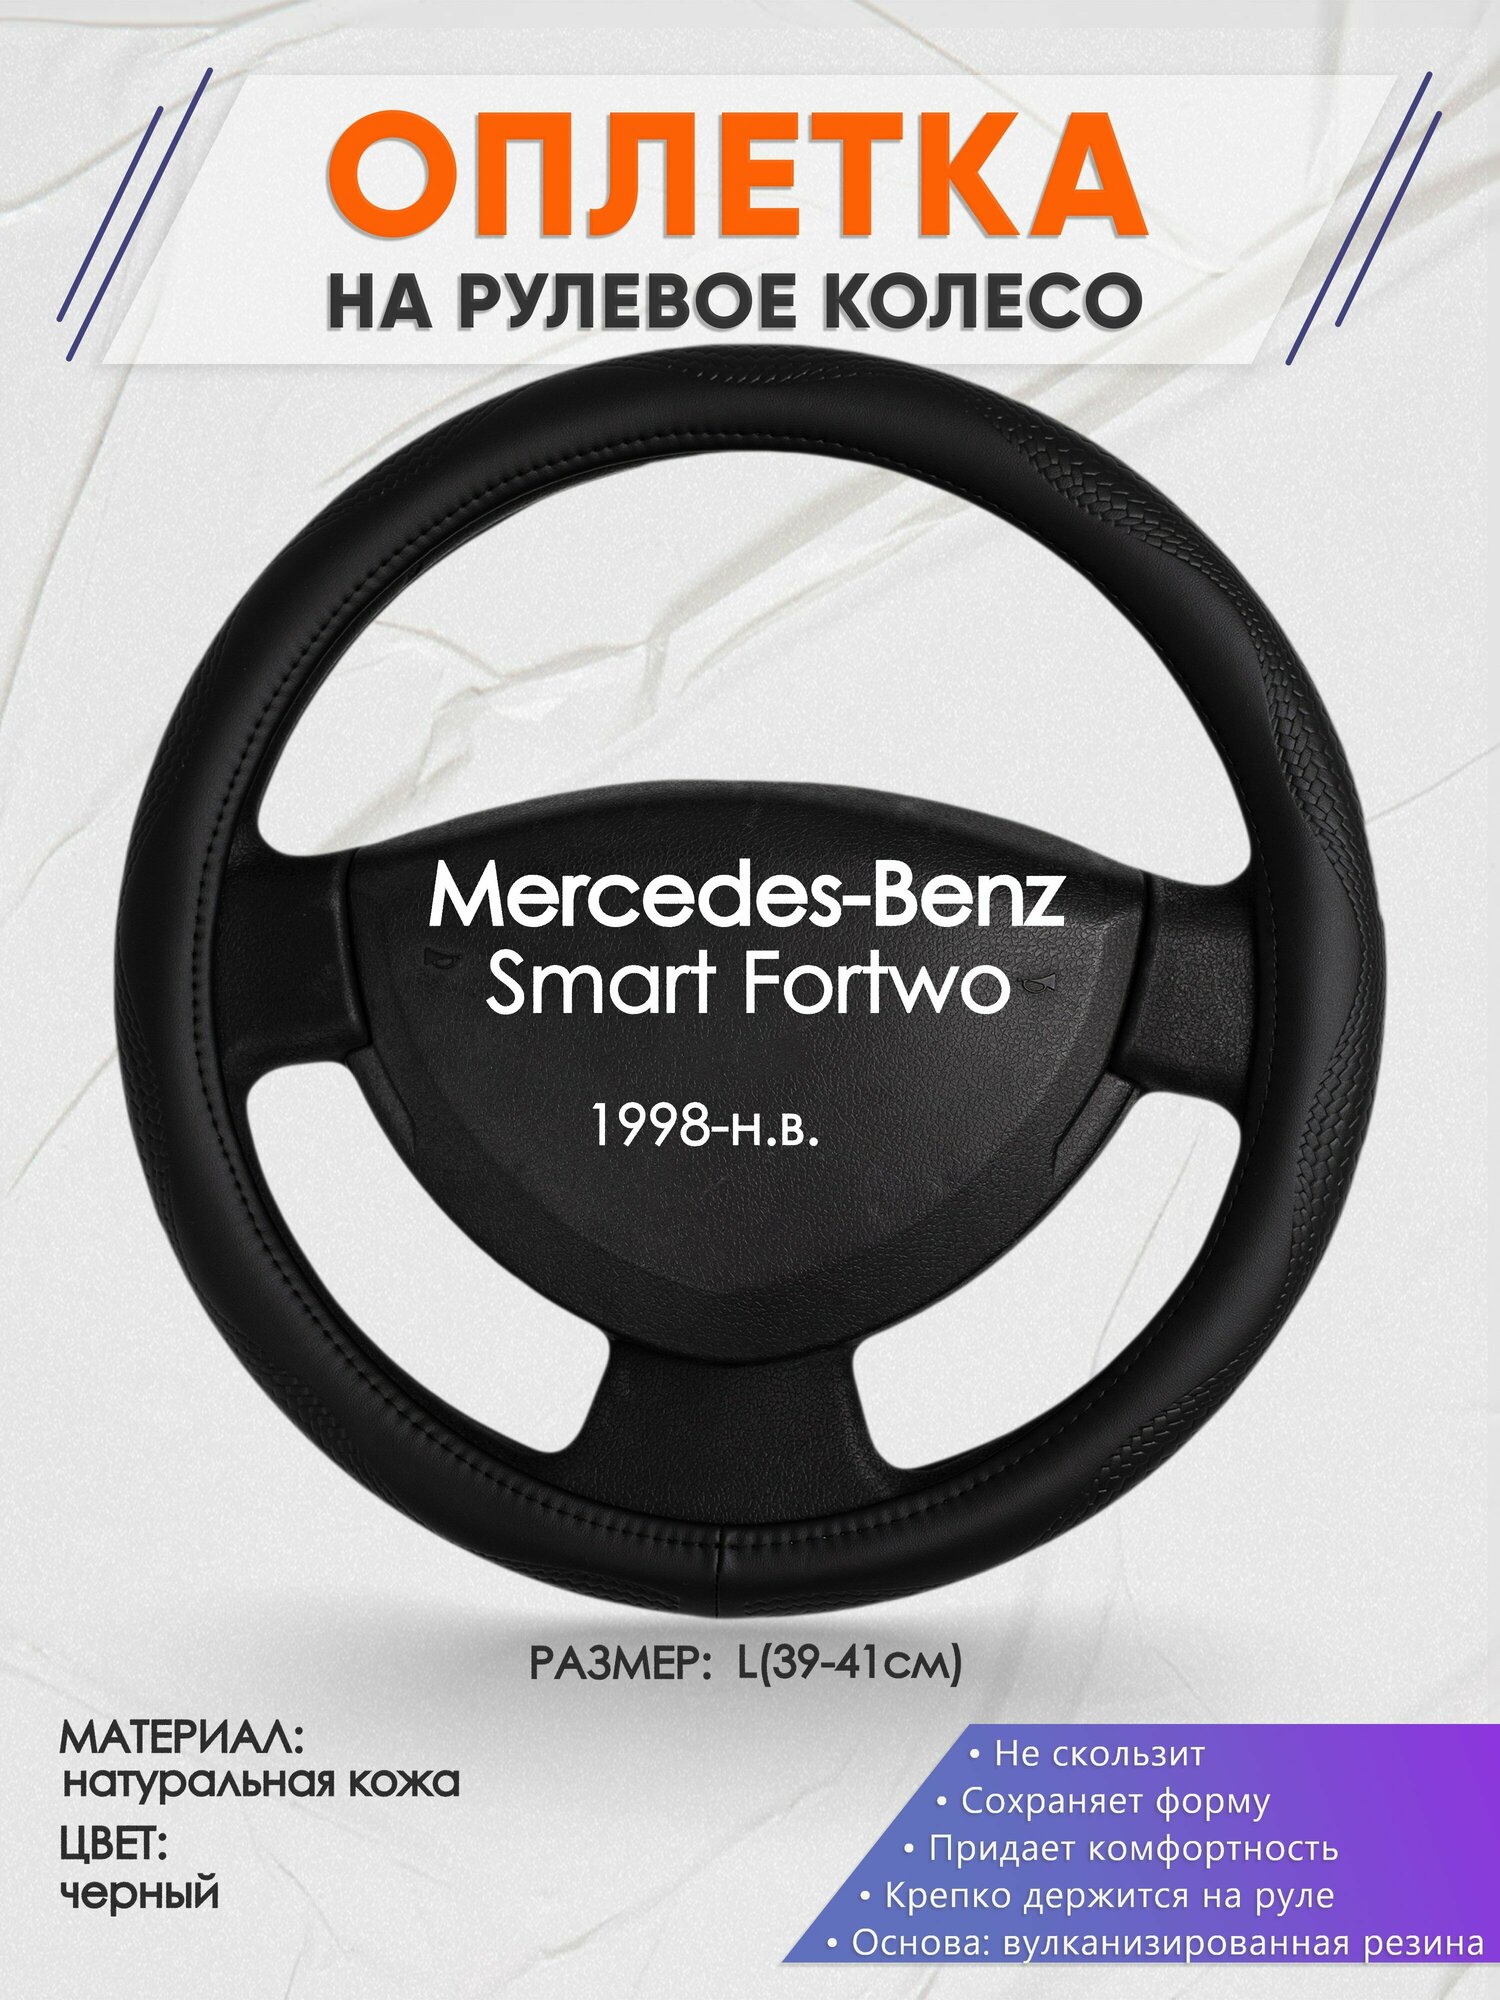 Оплетка на руль для Mercedes-Benz Smart Fortwo(Мерседес Бенц Смарт Форту) 1998-н. в, L(39-41см), Натуральная кожа 32